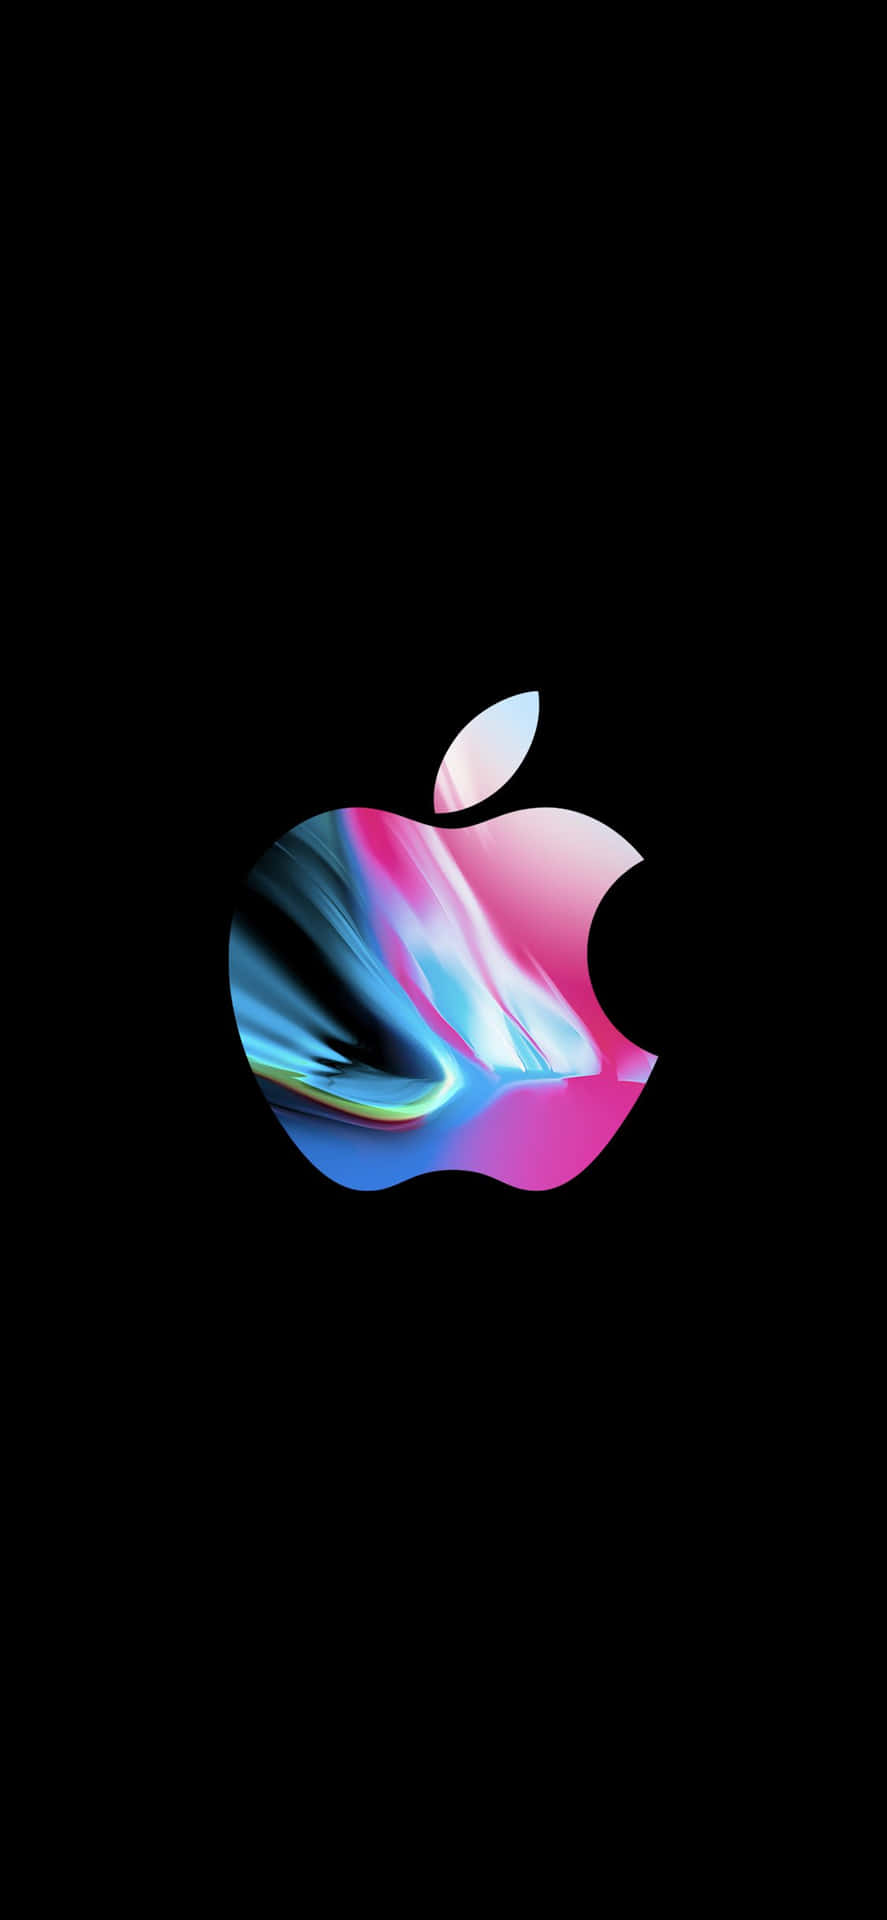 Apple's ikoniske logo klart udstillet på en iPhone X-baggrund. Wallpaper